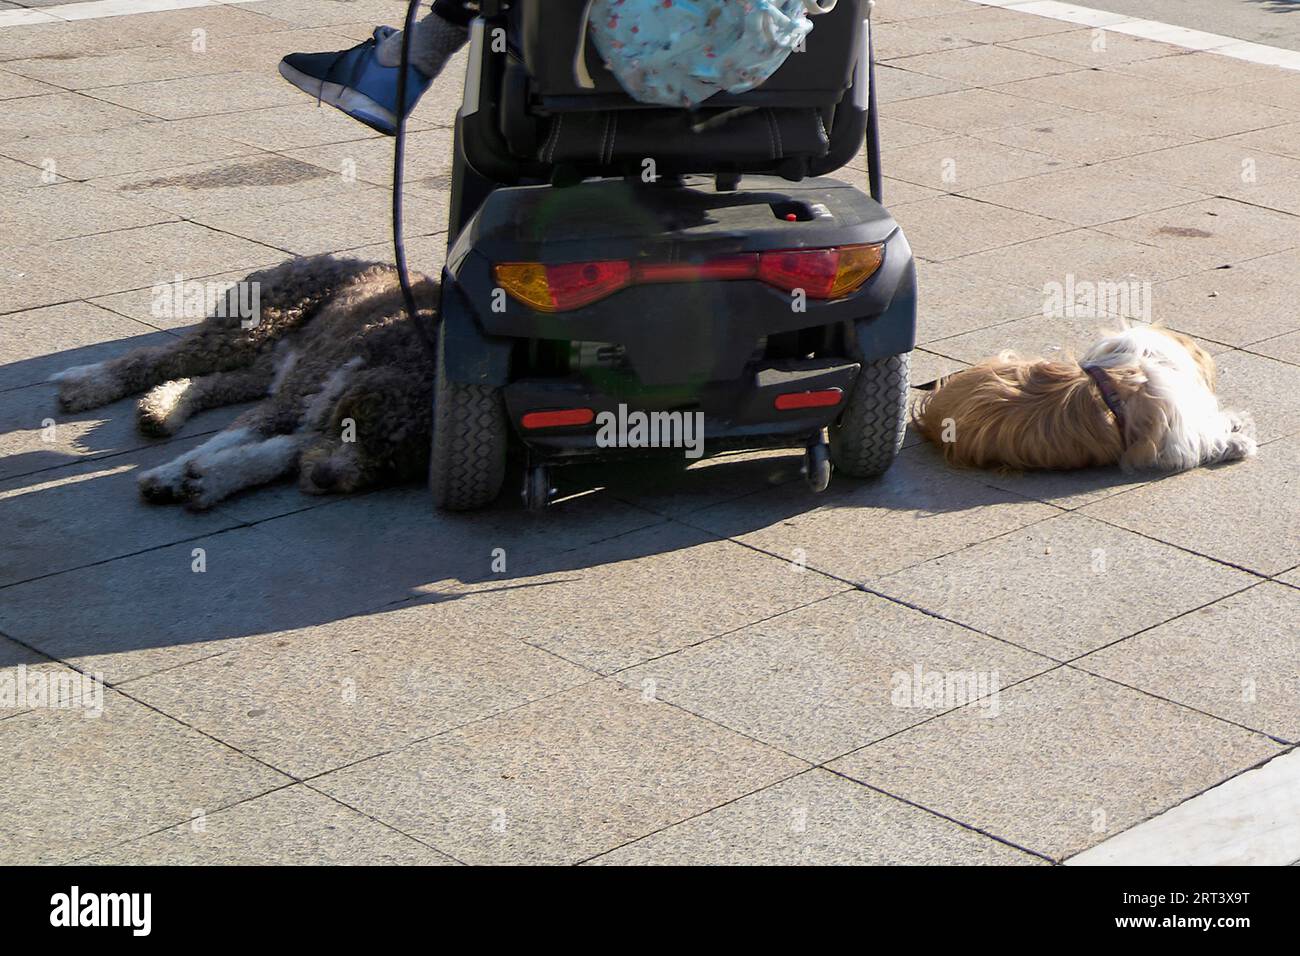 Entspannte Hunde, die an einer Leine am Auto einer behinderten Person befestigt sind, um ihnen Gesellschaft zu leisten Stockfoto